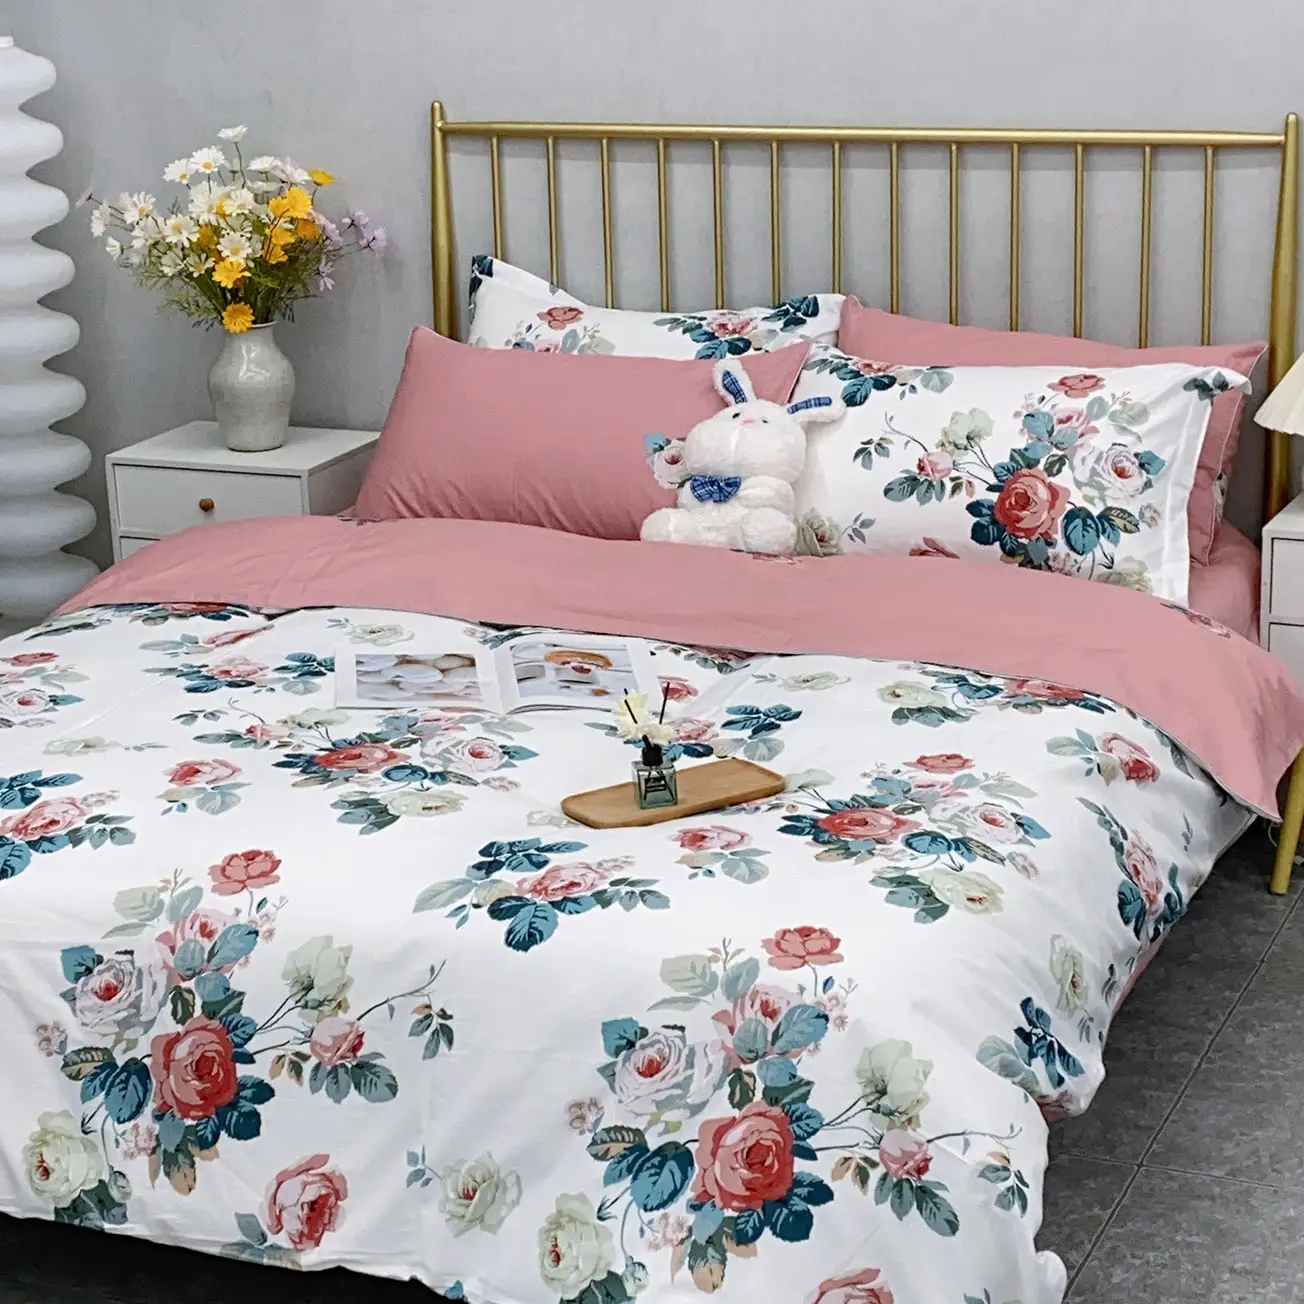 Vente en gros 100% coton imprimé drap de lit ensemble de literie personnalisé fleur drap de lit king size